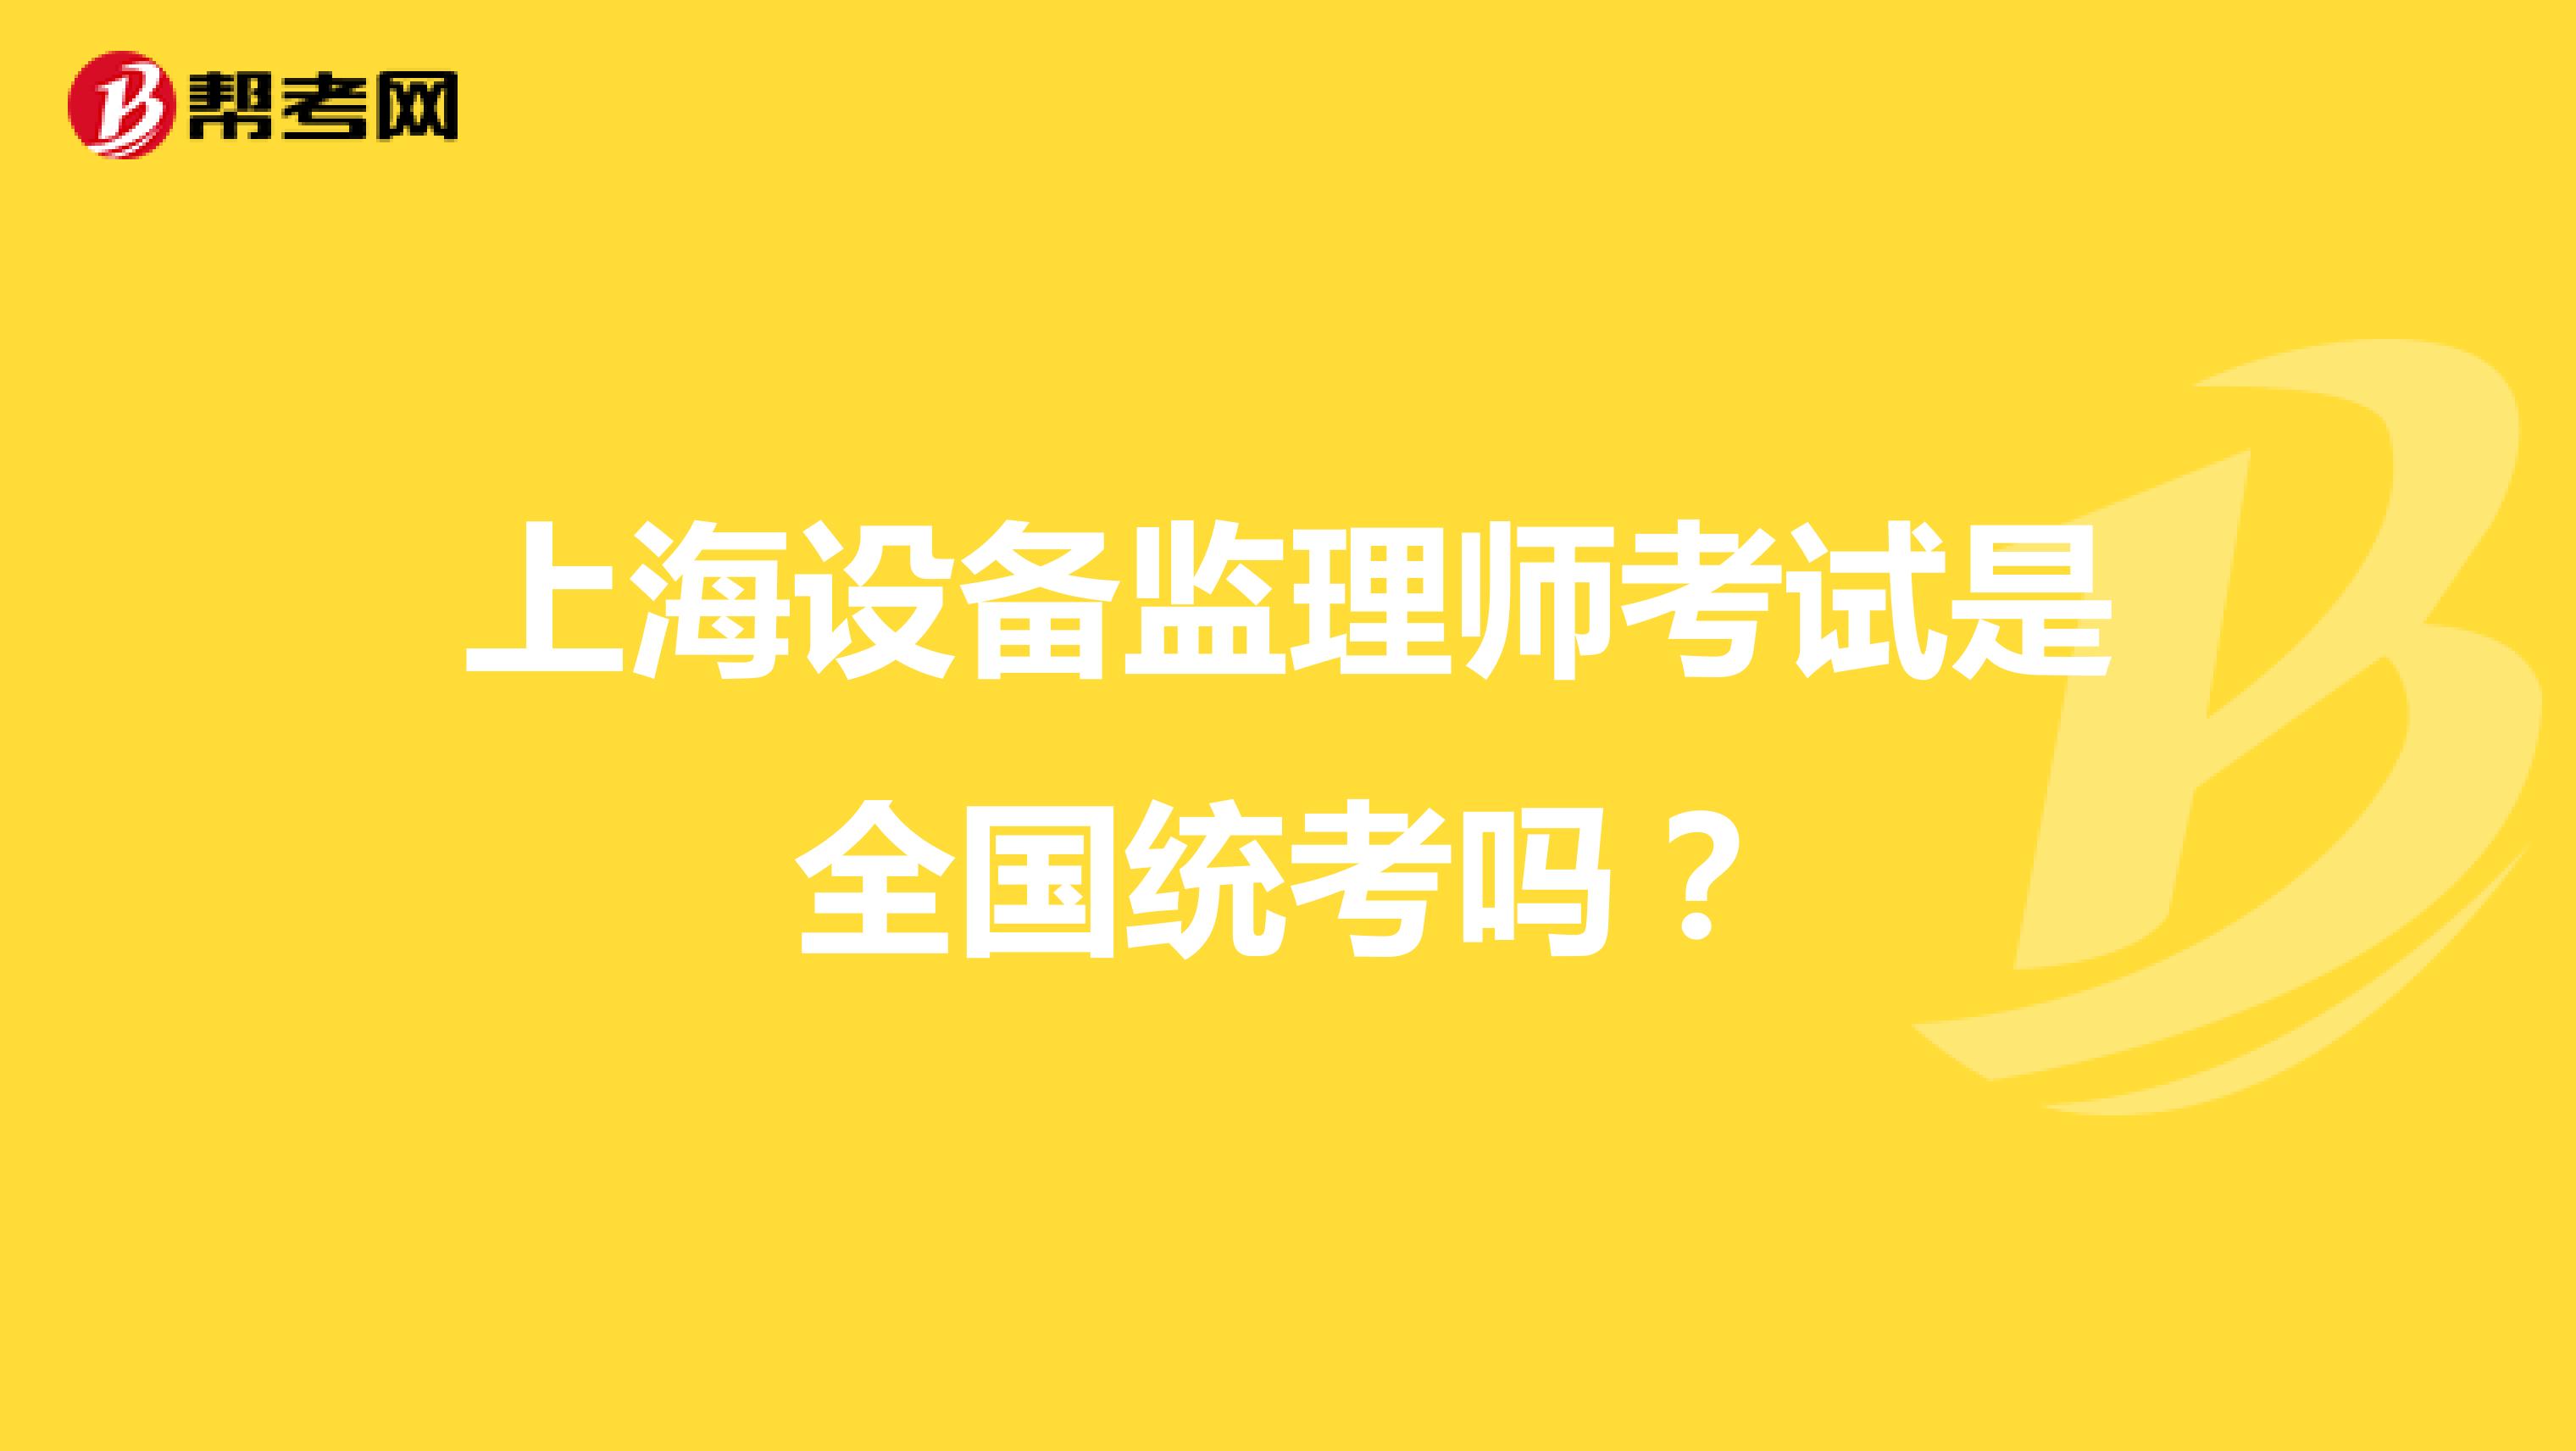 上海设备监理师考试是全国统考吗？